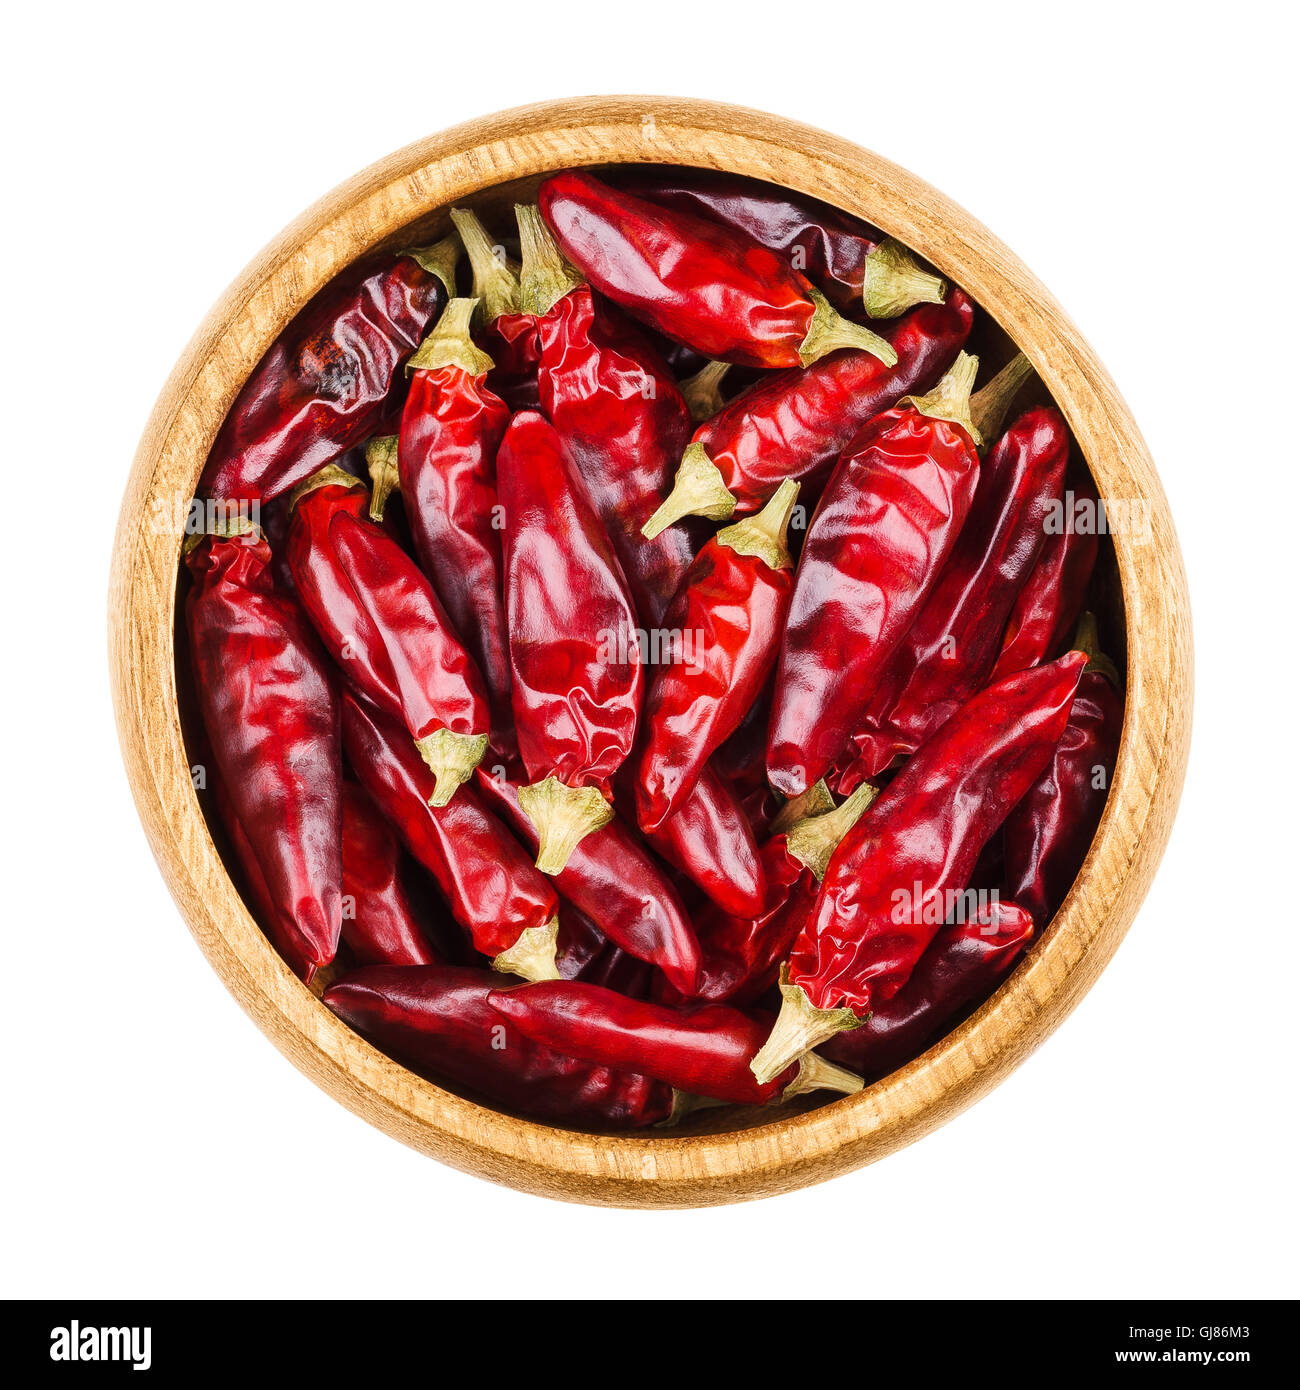 Red Hot Chili Peppers tabasco dans un bol sur fond blanc. Fruits secs de Capsicum frutescens, utilisé comme épice et de tabasco. Banque D'Images